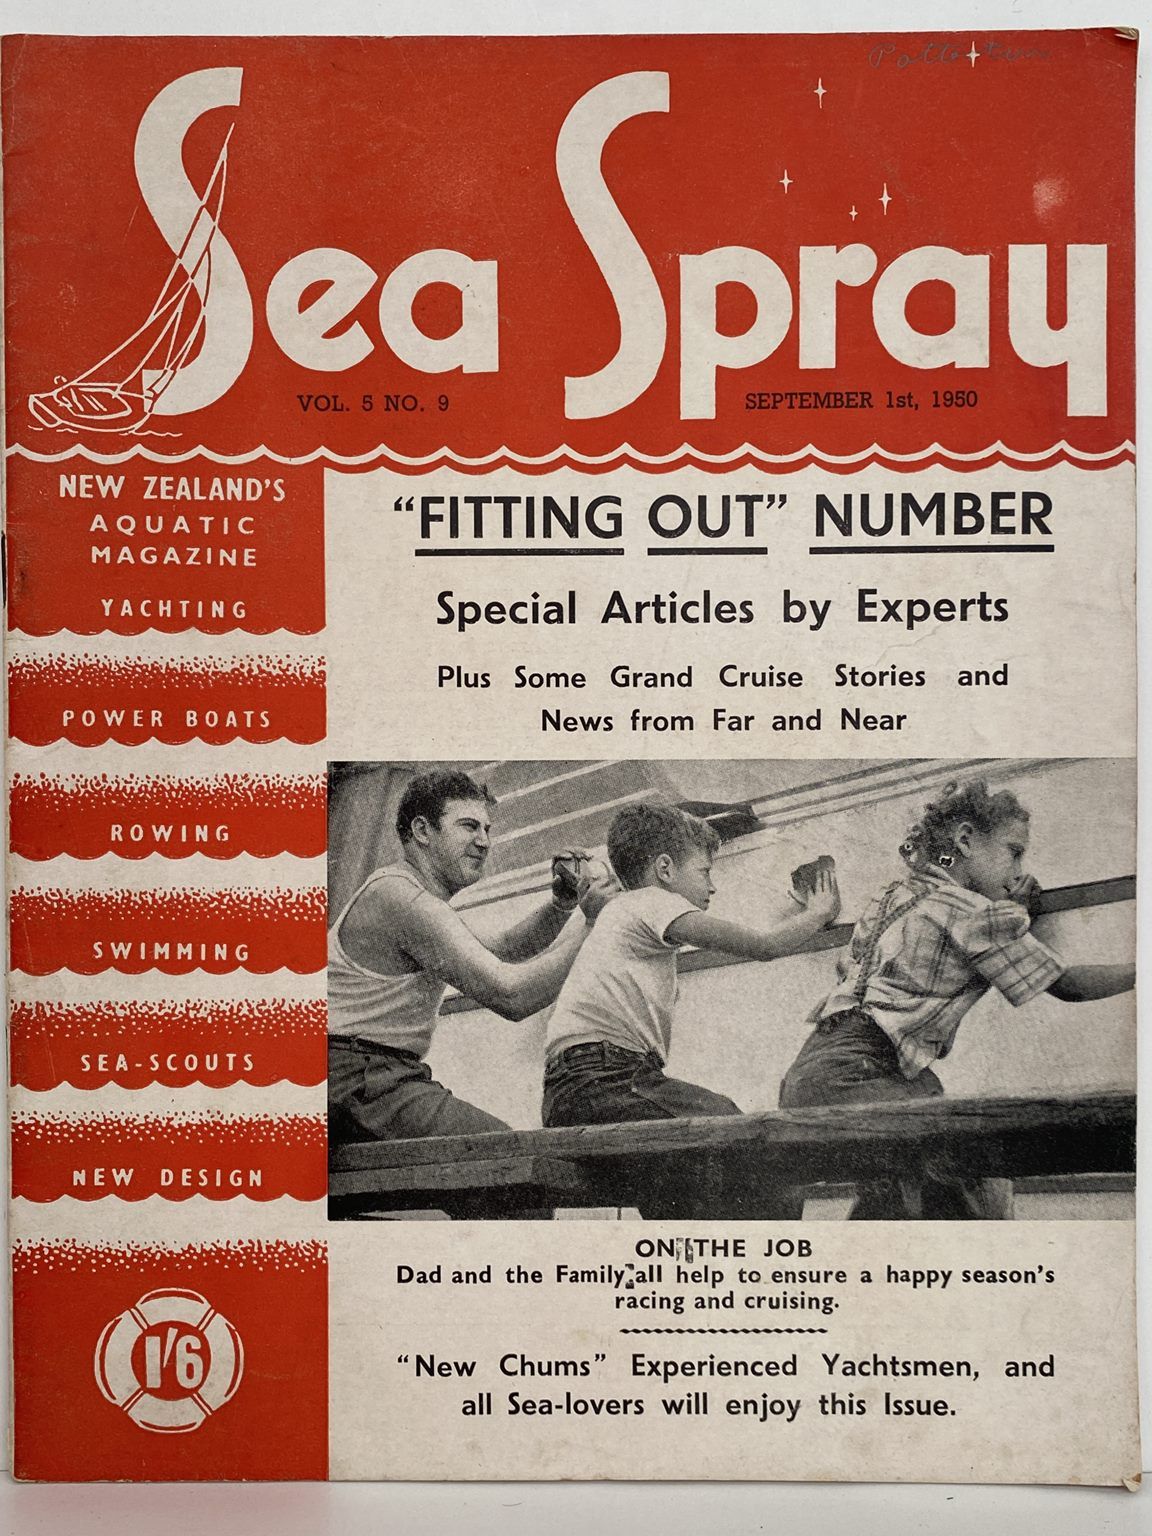 VINTAGE MAGAZINE: Sea Spray - Vol. 5, No. 9 - September 1950